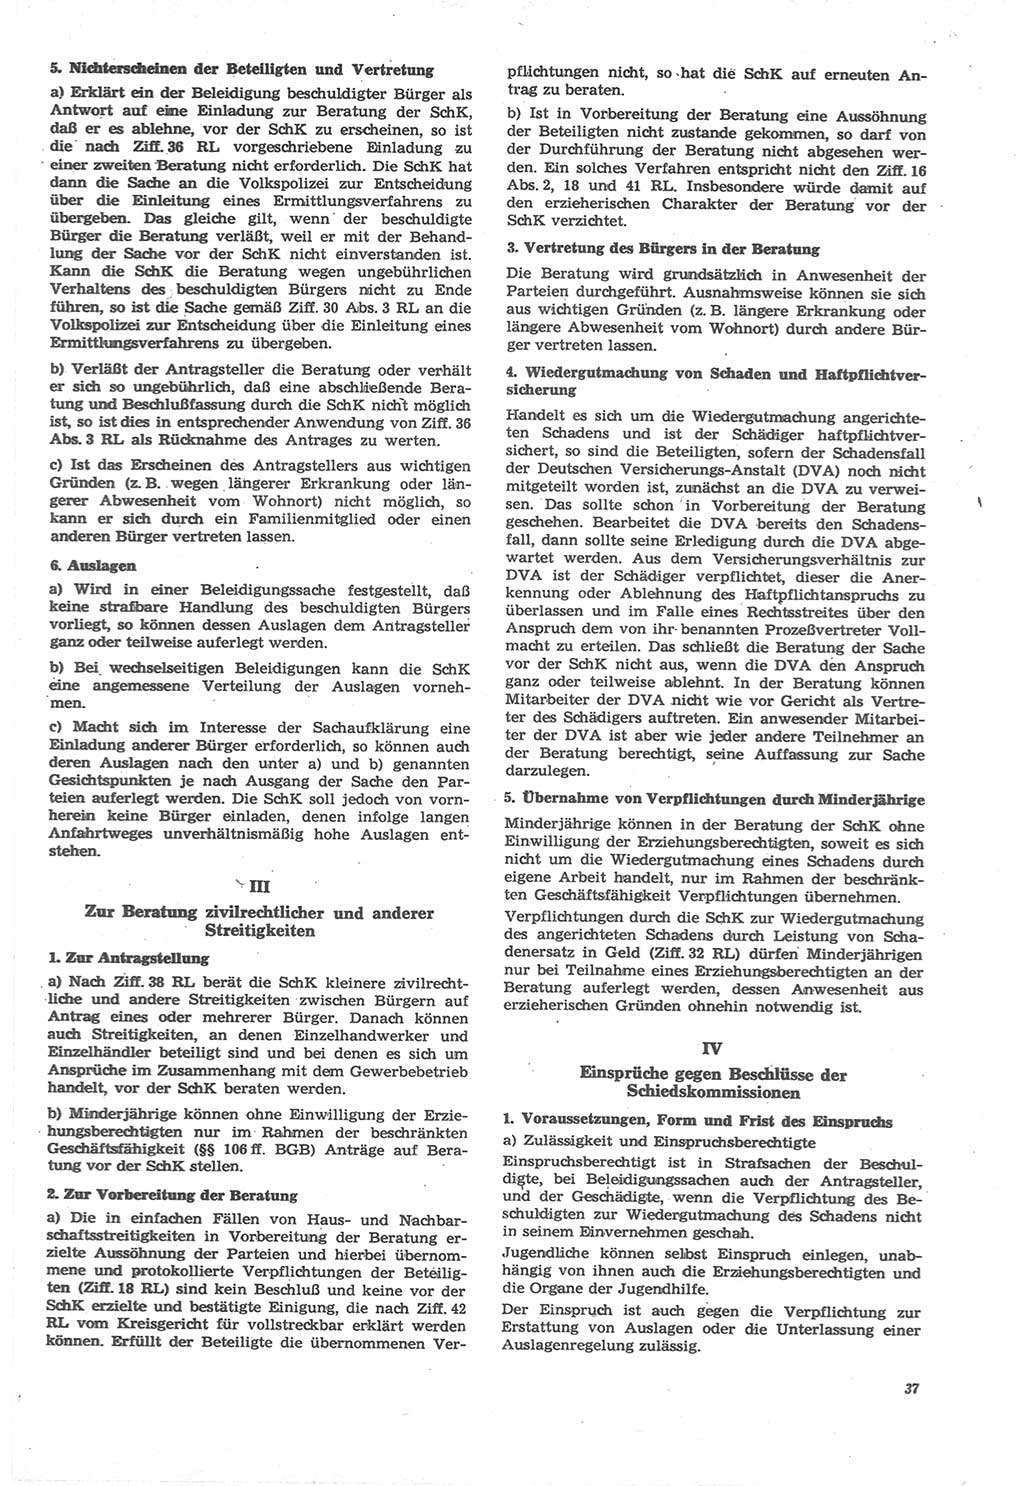 Neue Justiz (NJ), Zeitschrift für Recht und Rechtswissenschaft [Deutsche Demokratische Republik (DDR)], 22. Jahrgang 1968, Seite 37 (NJ DDR 1968, S. 37)